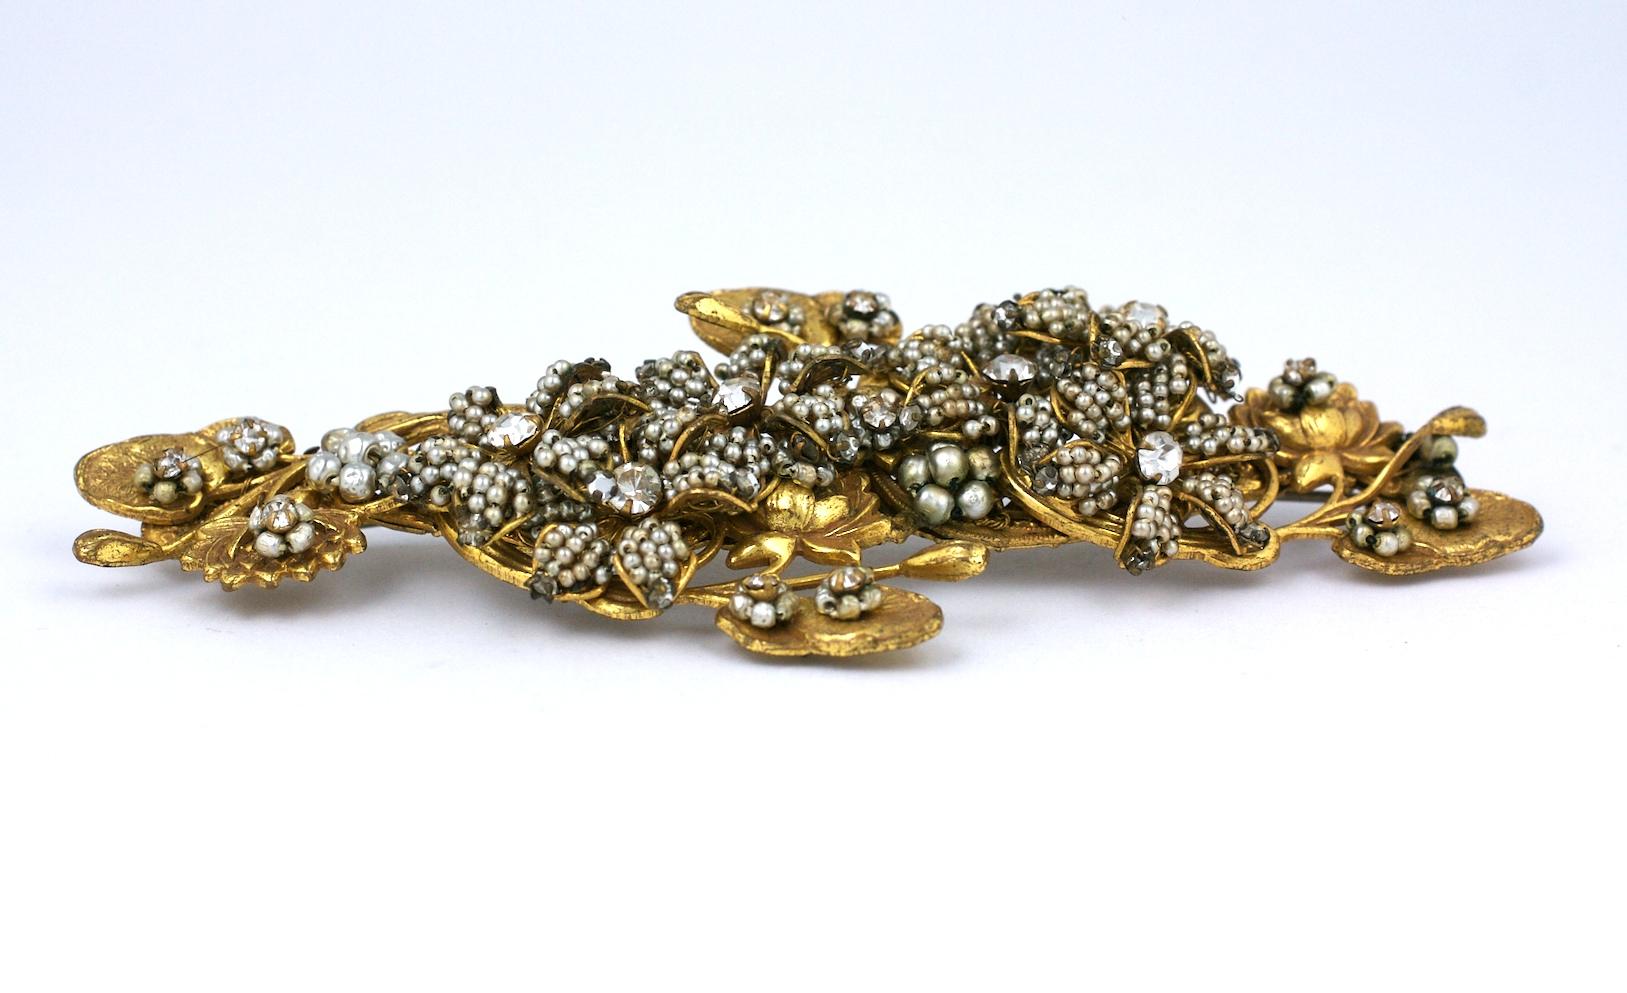 Magnifique et grande broche Miriam Haskell Pearl, composée de microperles en fausse perle formant une longue gerbe avec des filigranes de nénuphars dorés. Des centaines de petites perles de rocaille sont brodées à la main sur les filigranes en forme